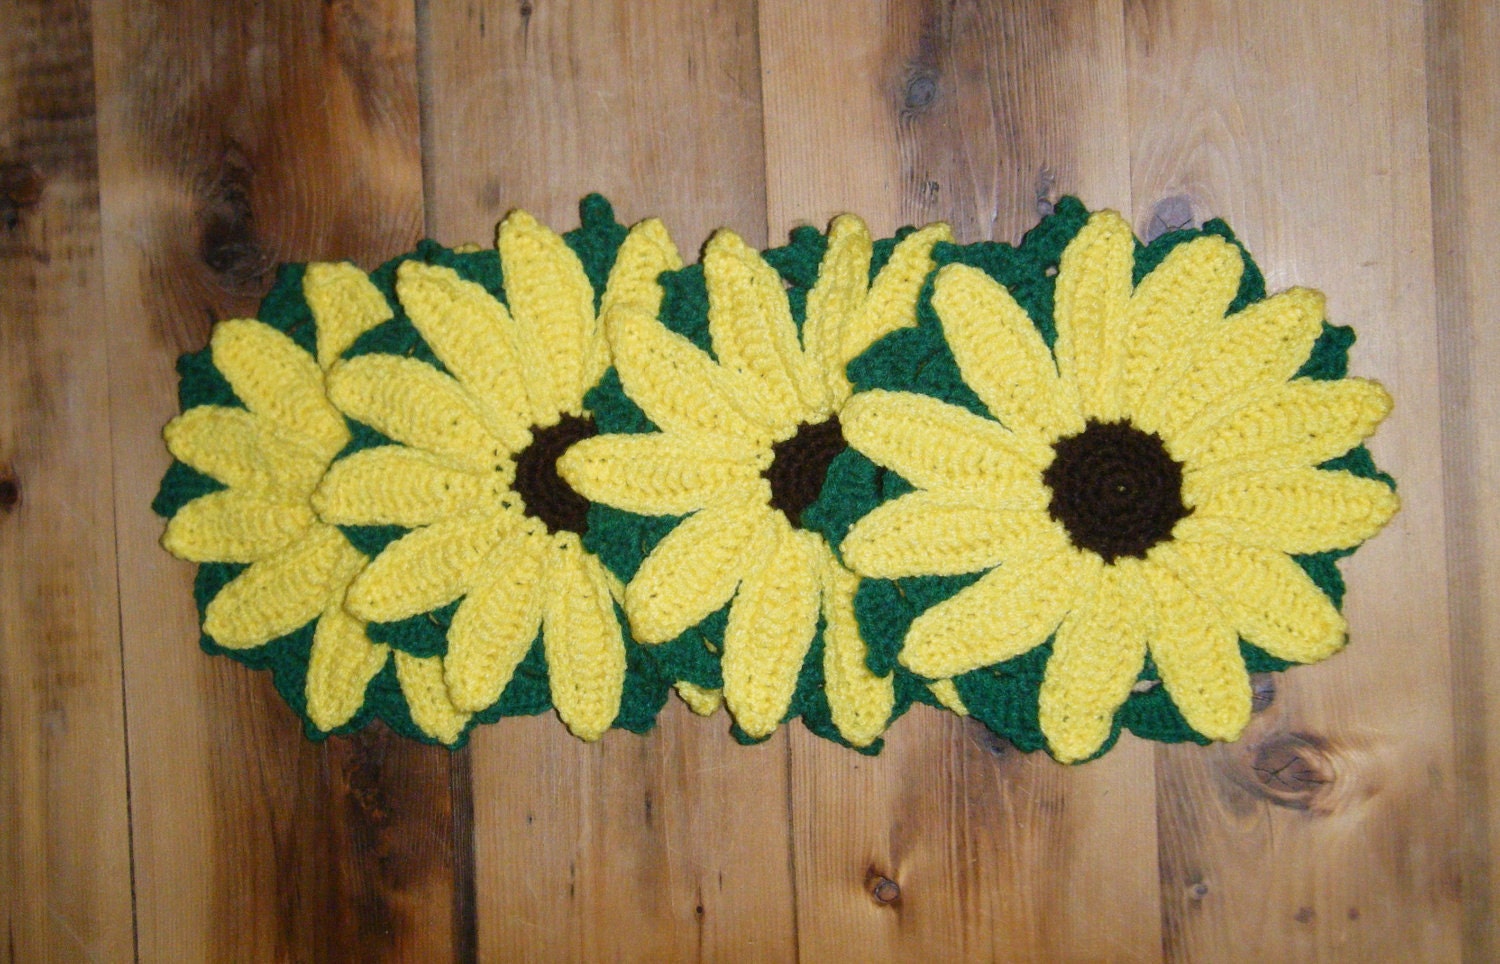 Handmade Crochet Sunflower Potholder Trivets - Set of 4